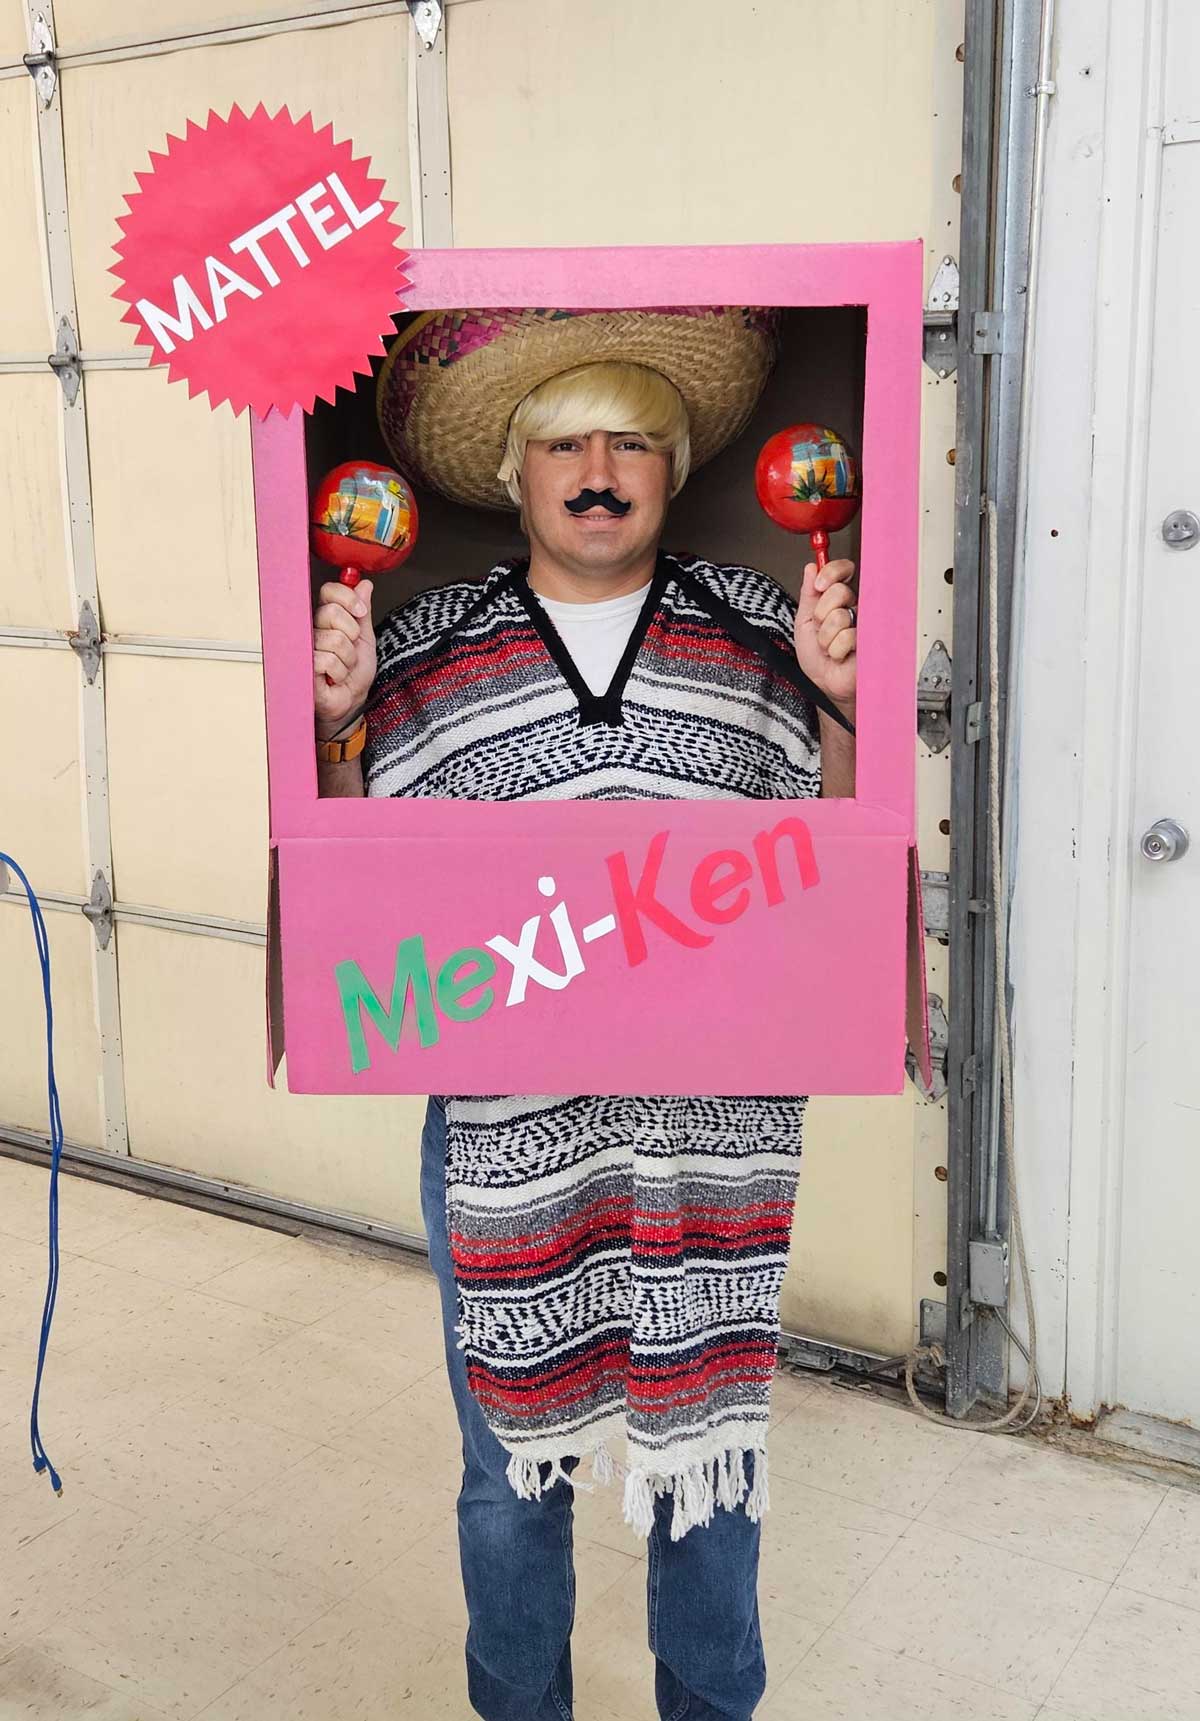 Mexi-Ken